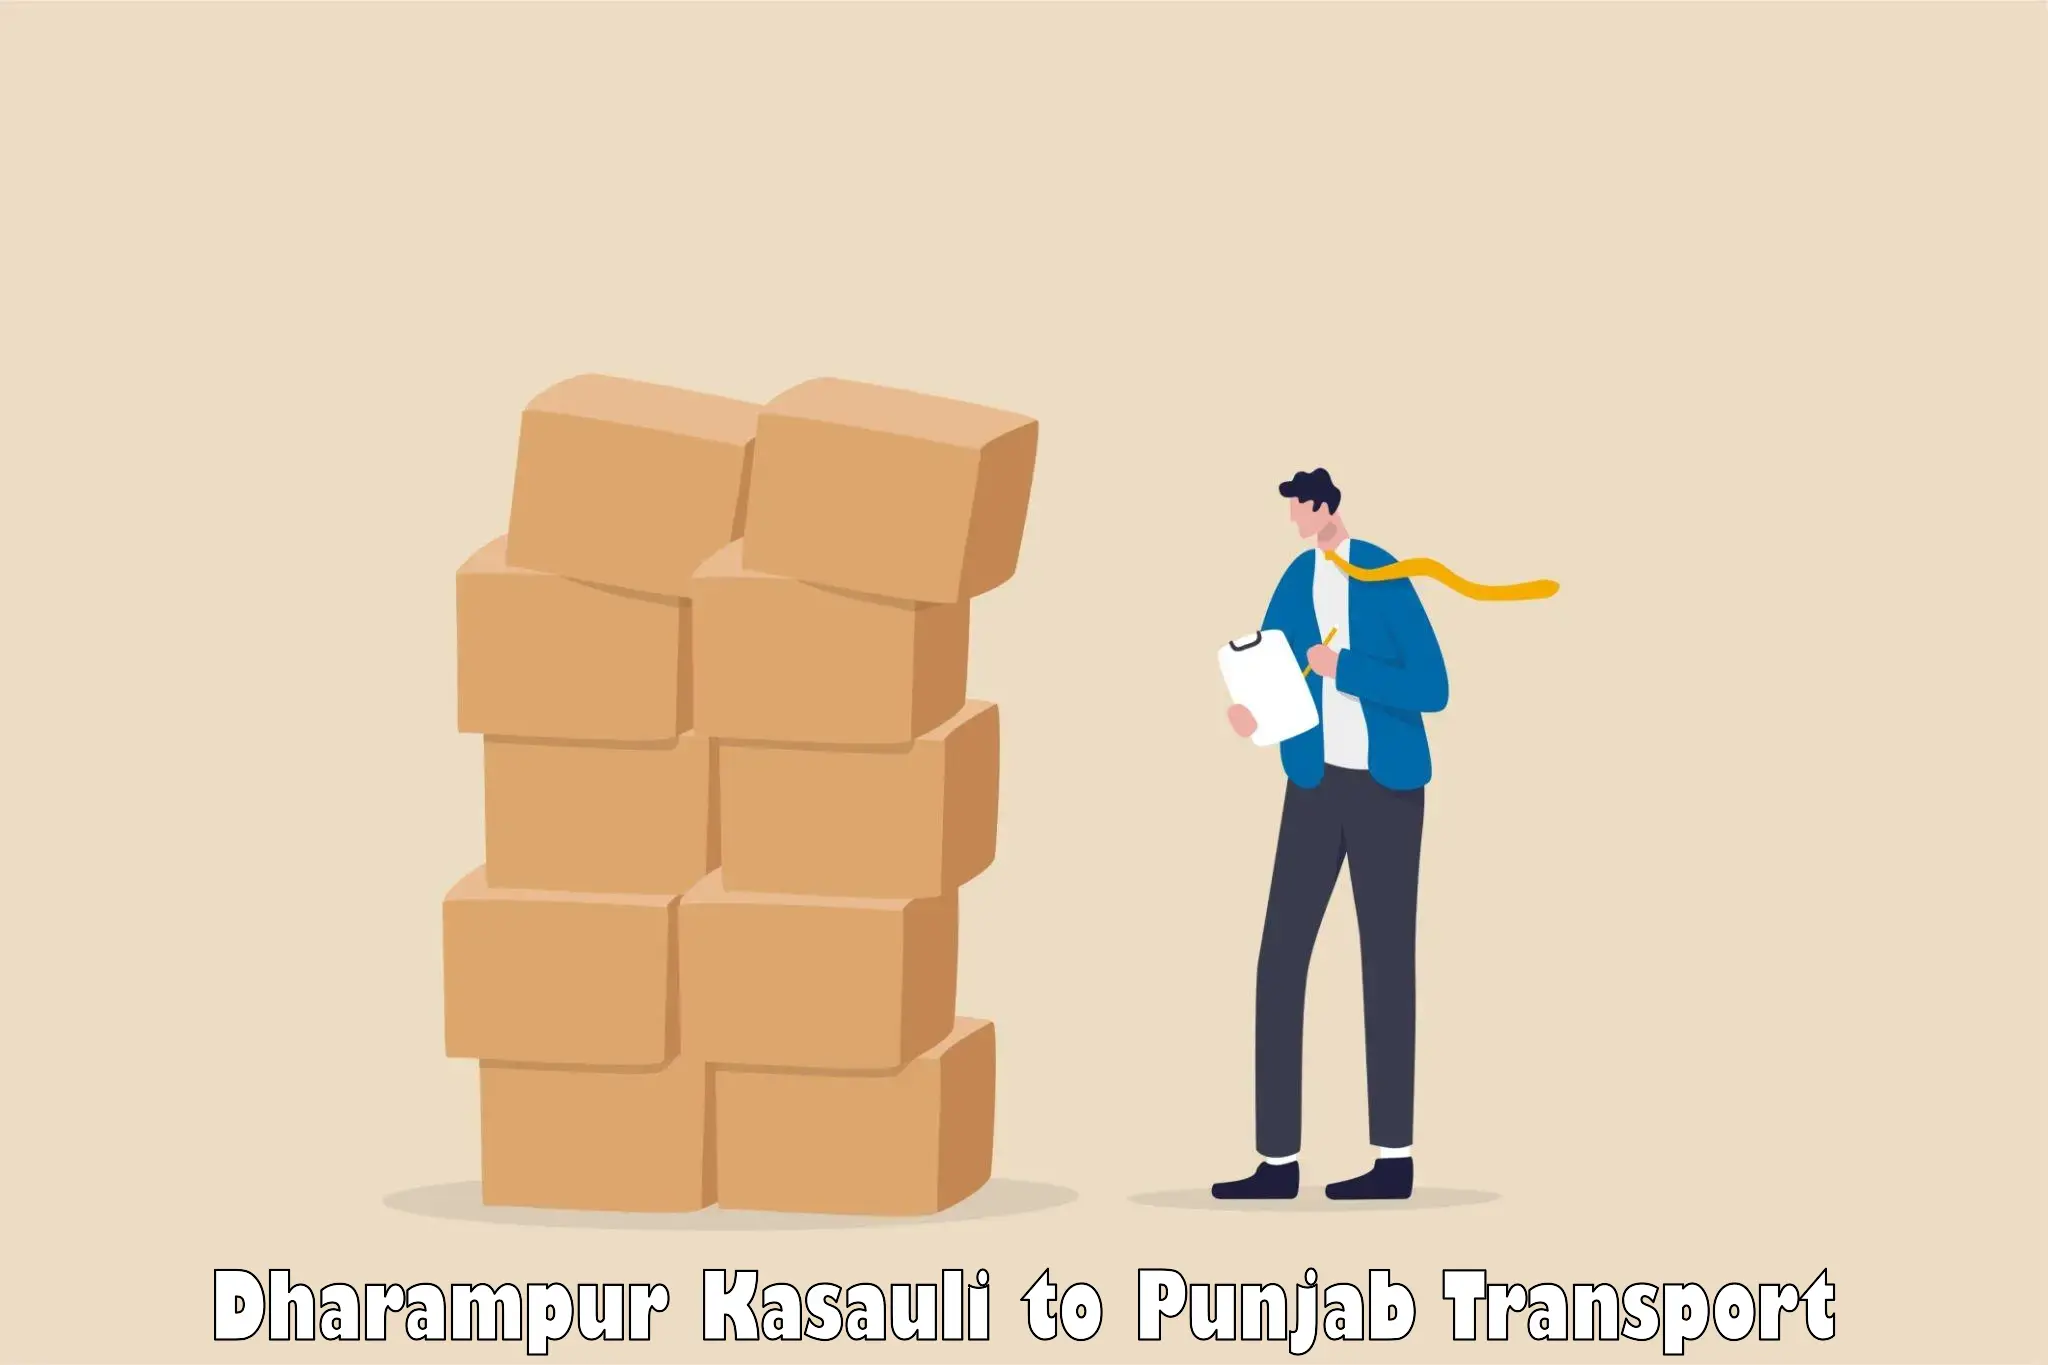 Road transport services Dharampur Kasauli to Sangrur